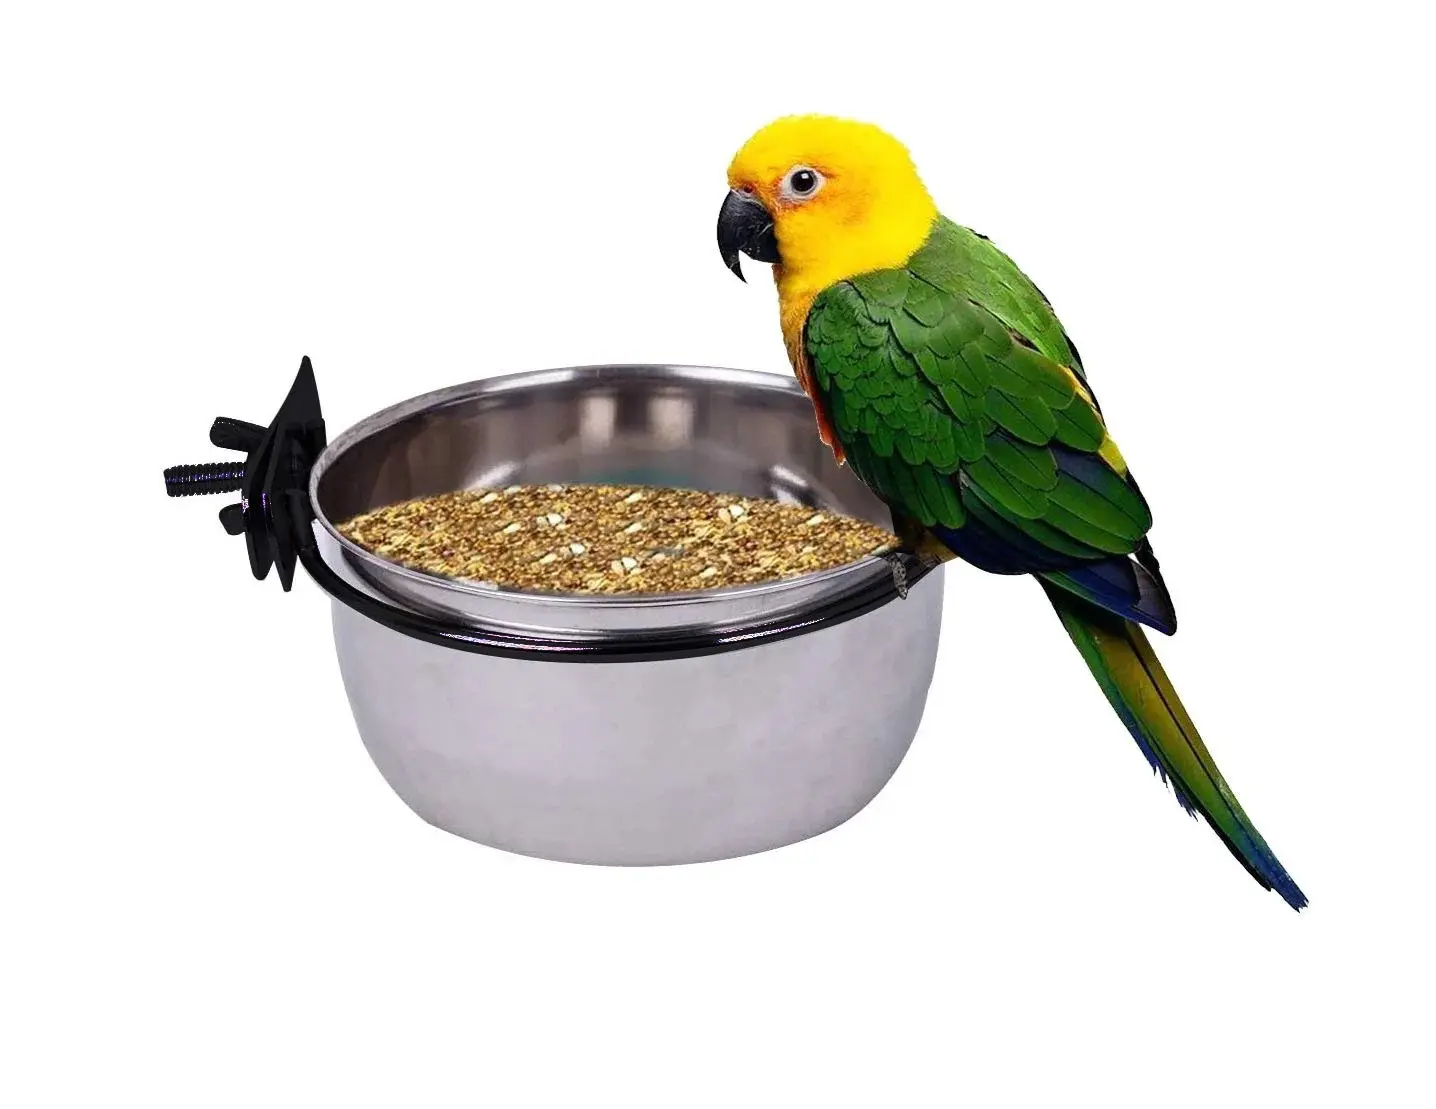 Hanging Stainless Steel Bird Feeding Coop Hook Cup Feeding Holder Bowl Parrot Food Dish Feeder durability longevity Secure Hook